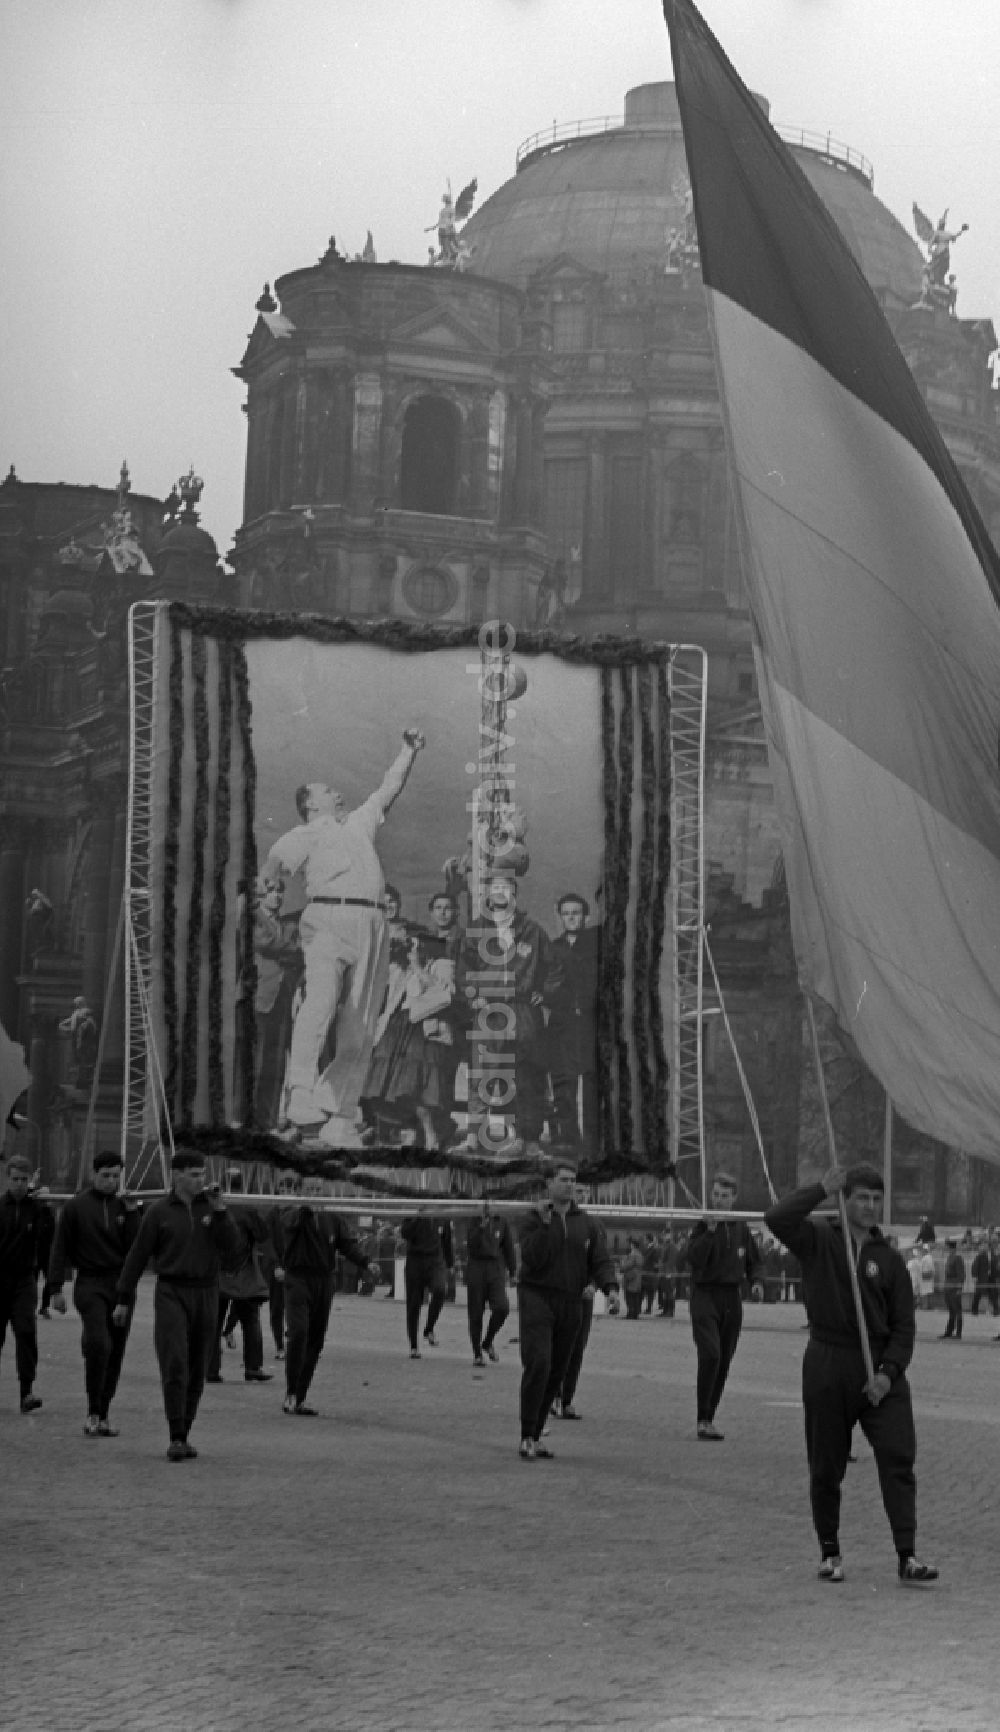 DDR-Fotoarchiv: Berlin Mitte - Begeisterte Mitglieder des SC Dynamo Berlin beim Vorbeizug an der Ehrentribüne zum Feiertag des 1. Mai am Schloßplatz in Berlin - Mitte